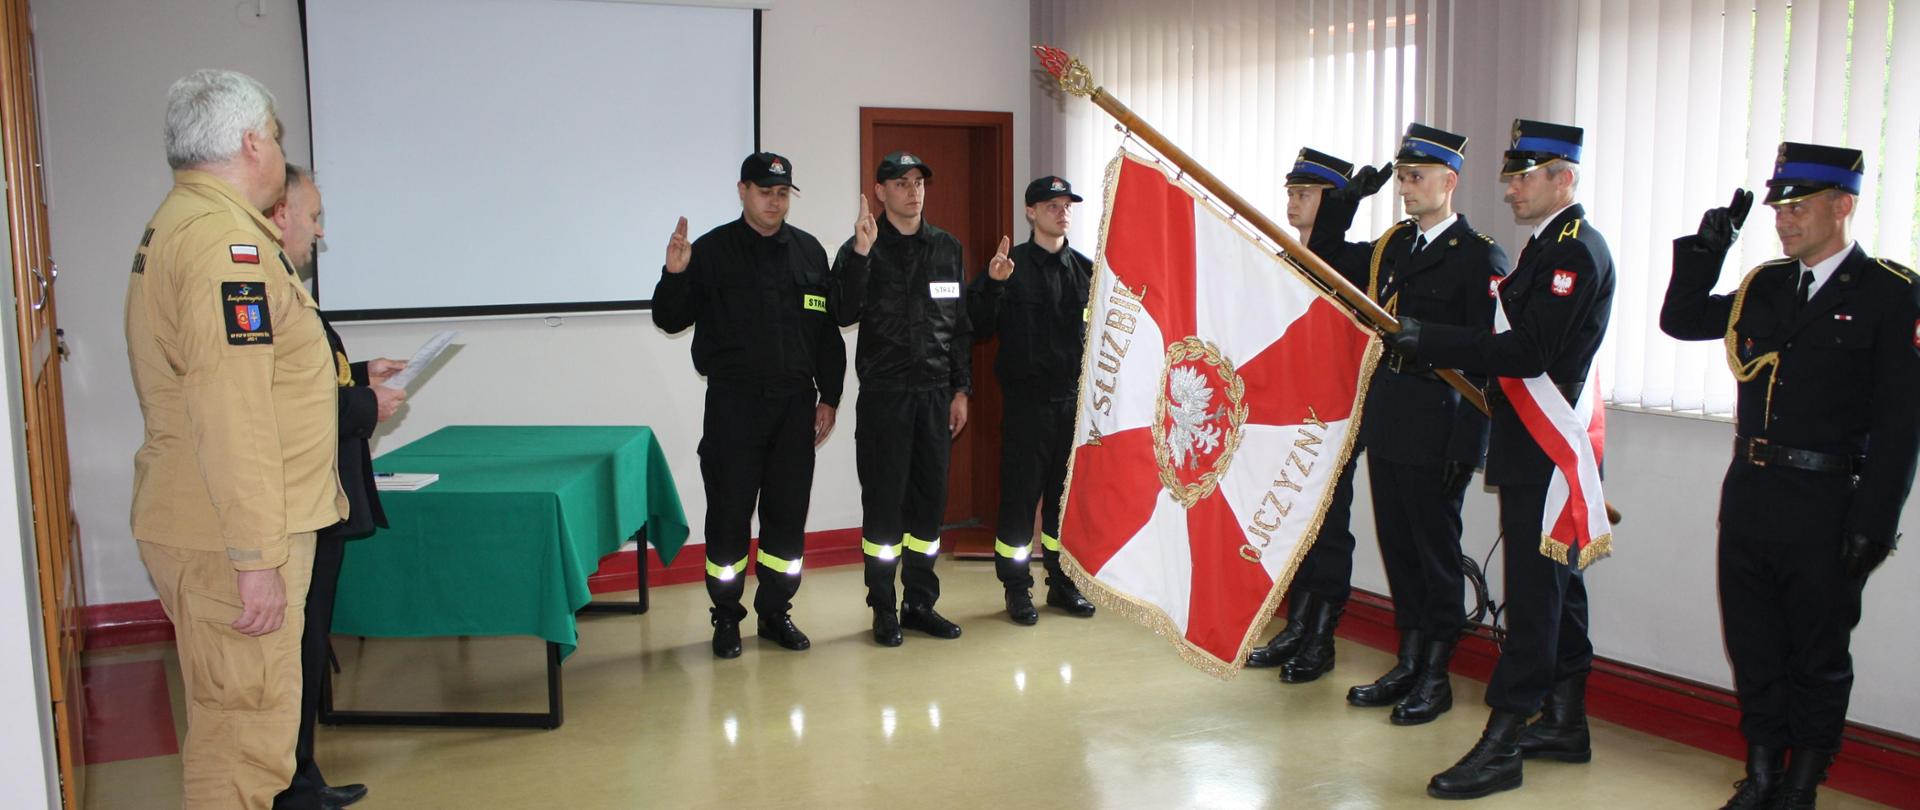 Strażacy oddający gest ślubowania do sztandaru KP PSP w Starachowicach